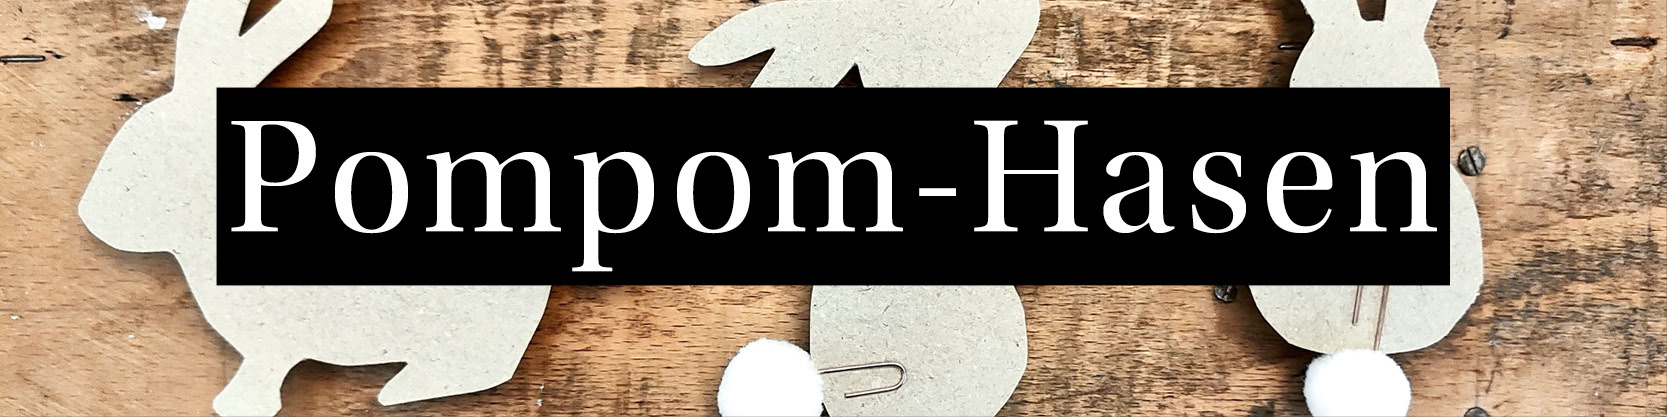 Pompom-Hasen